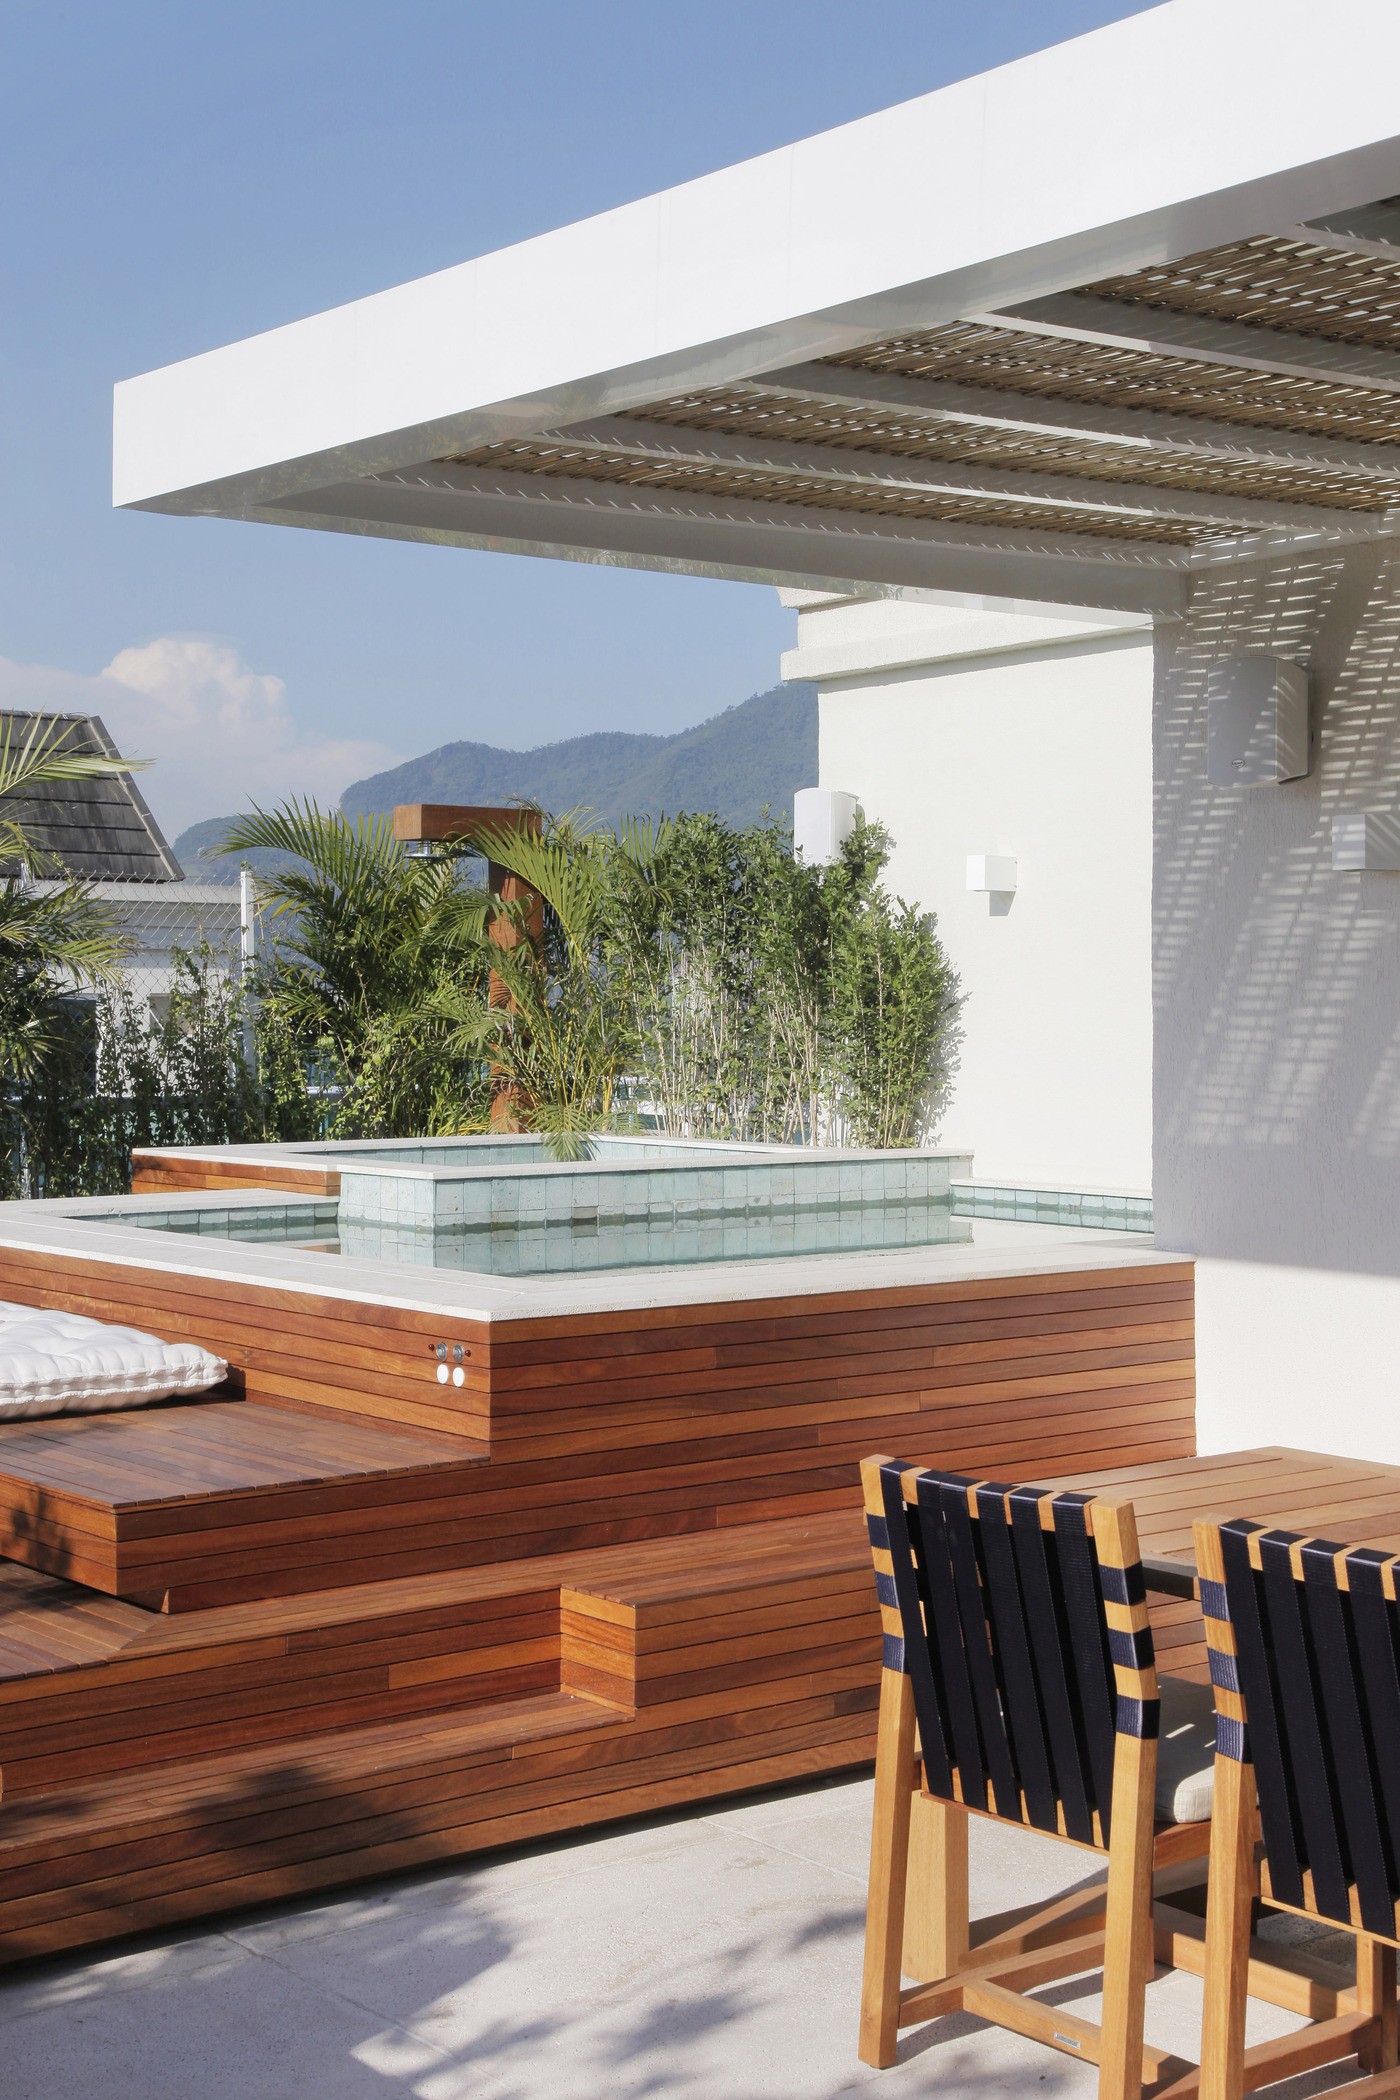 Décor do dia: cerca-viva garante privacidade em terraço com piscina (Foto: Leonardo Costa)